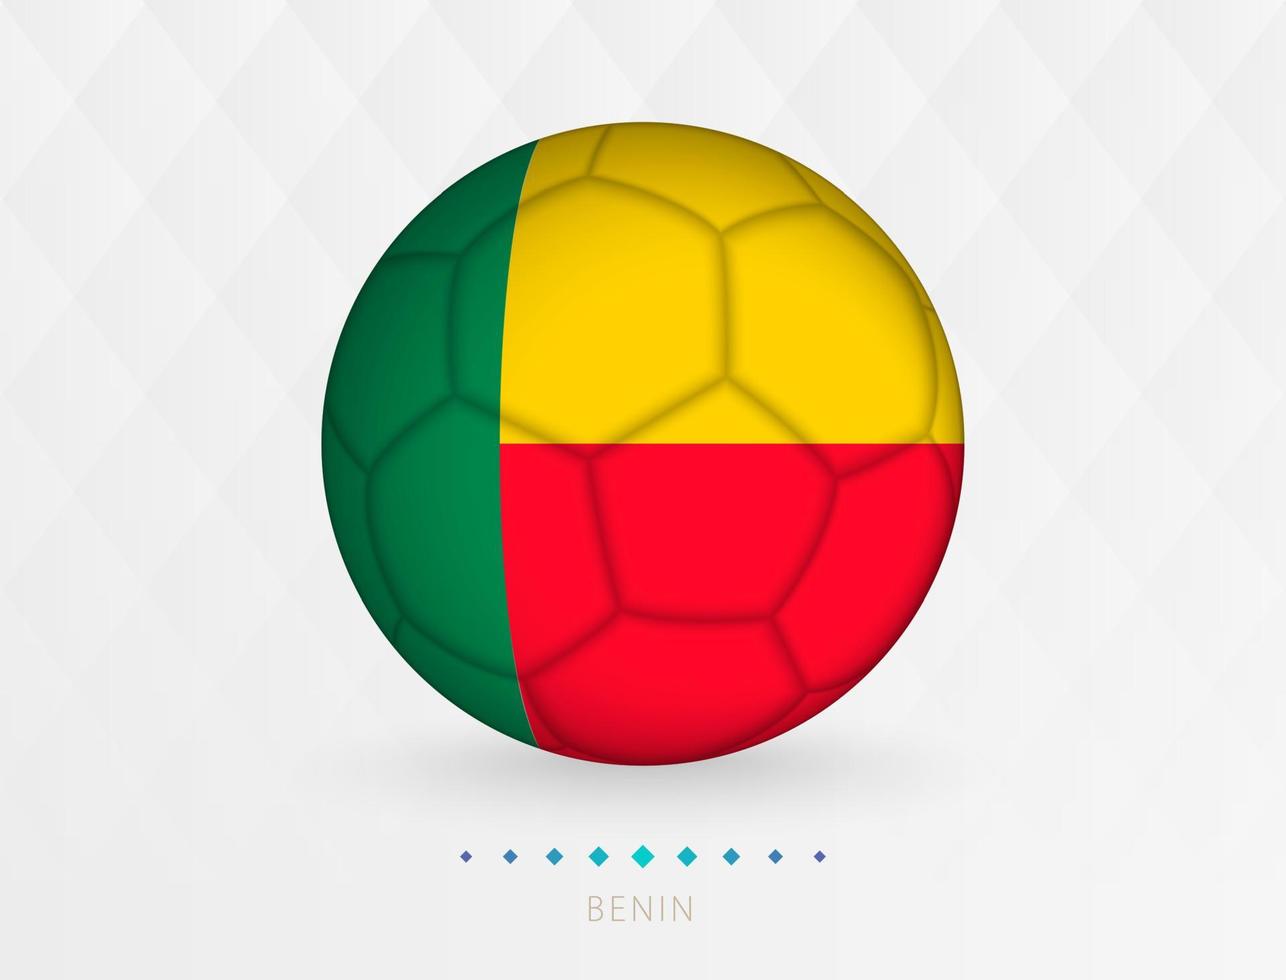 Amerikaans voetbal bal met Benin vlag patroon, voetbal bal met vlag van Benin nationaal team. vector